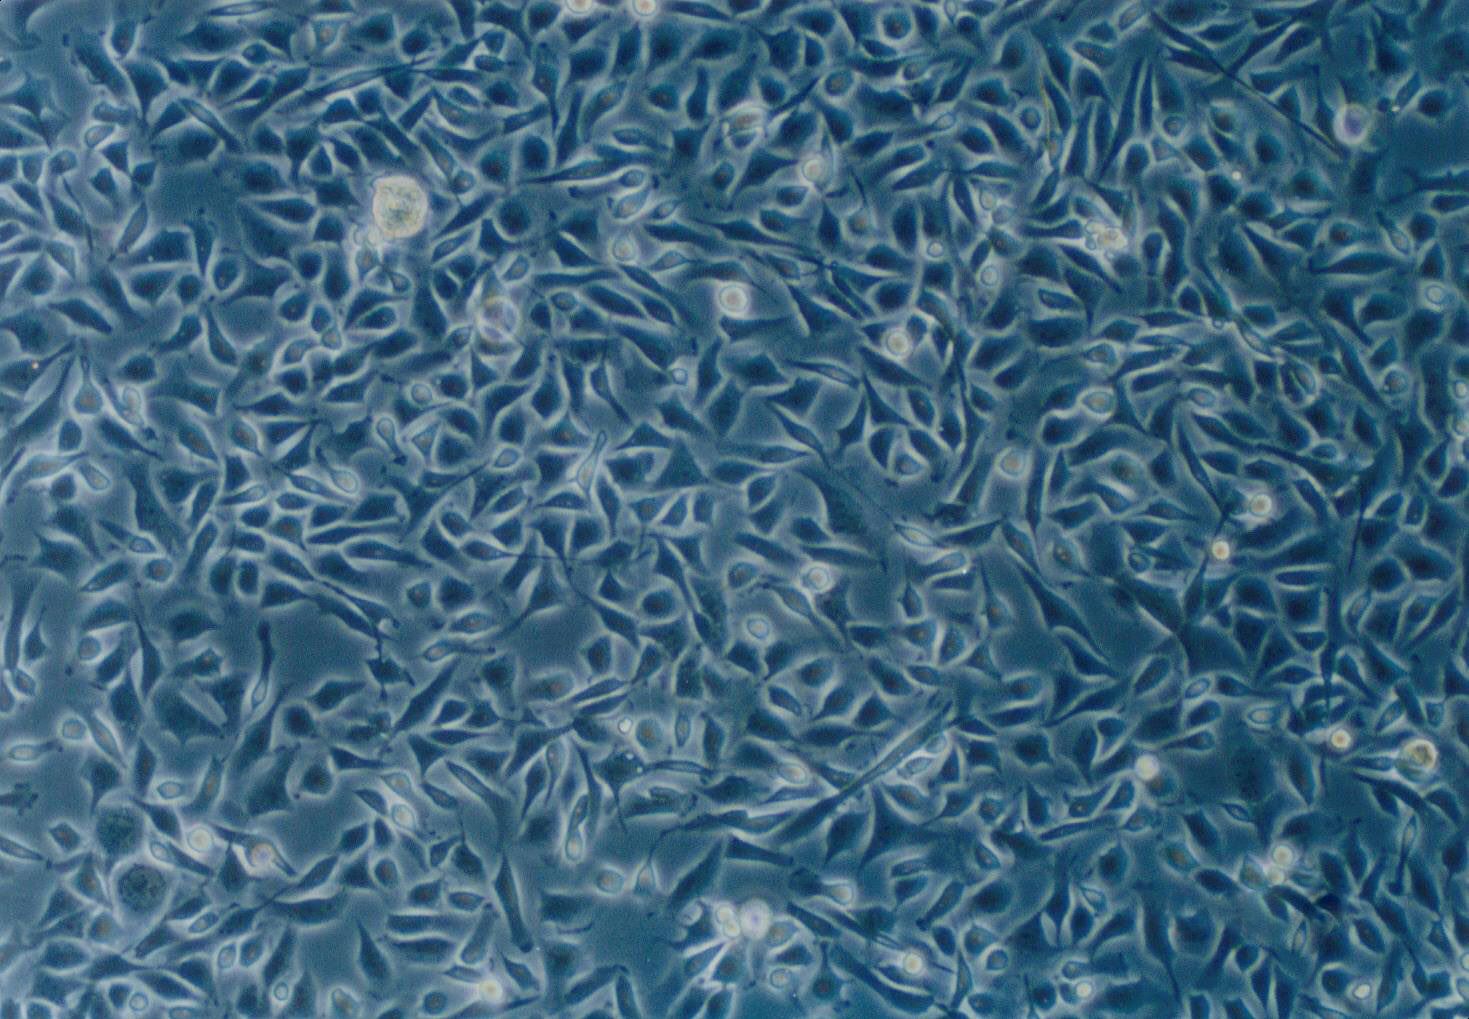 HBZY-1:大鼠肾小球系膜复苏细胞(提供STR鉴定图谱)